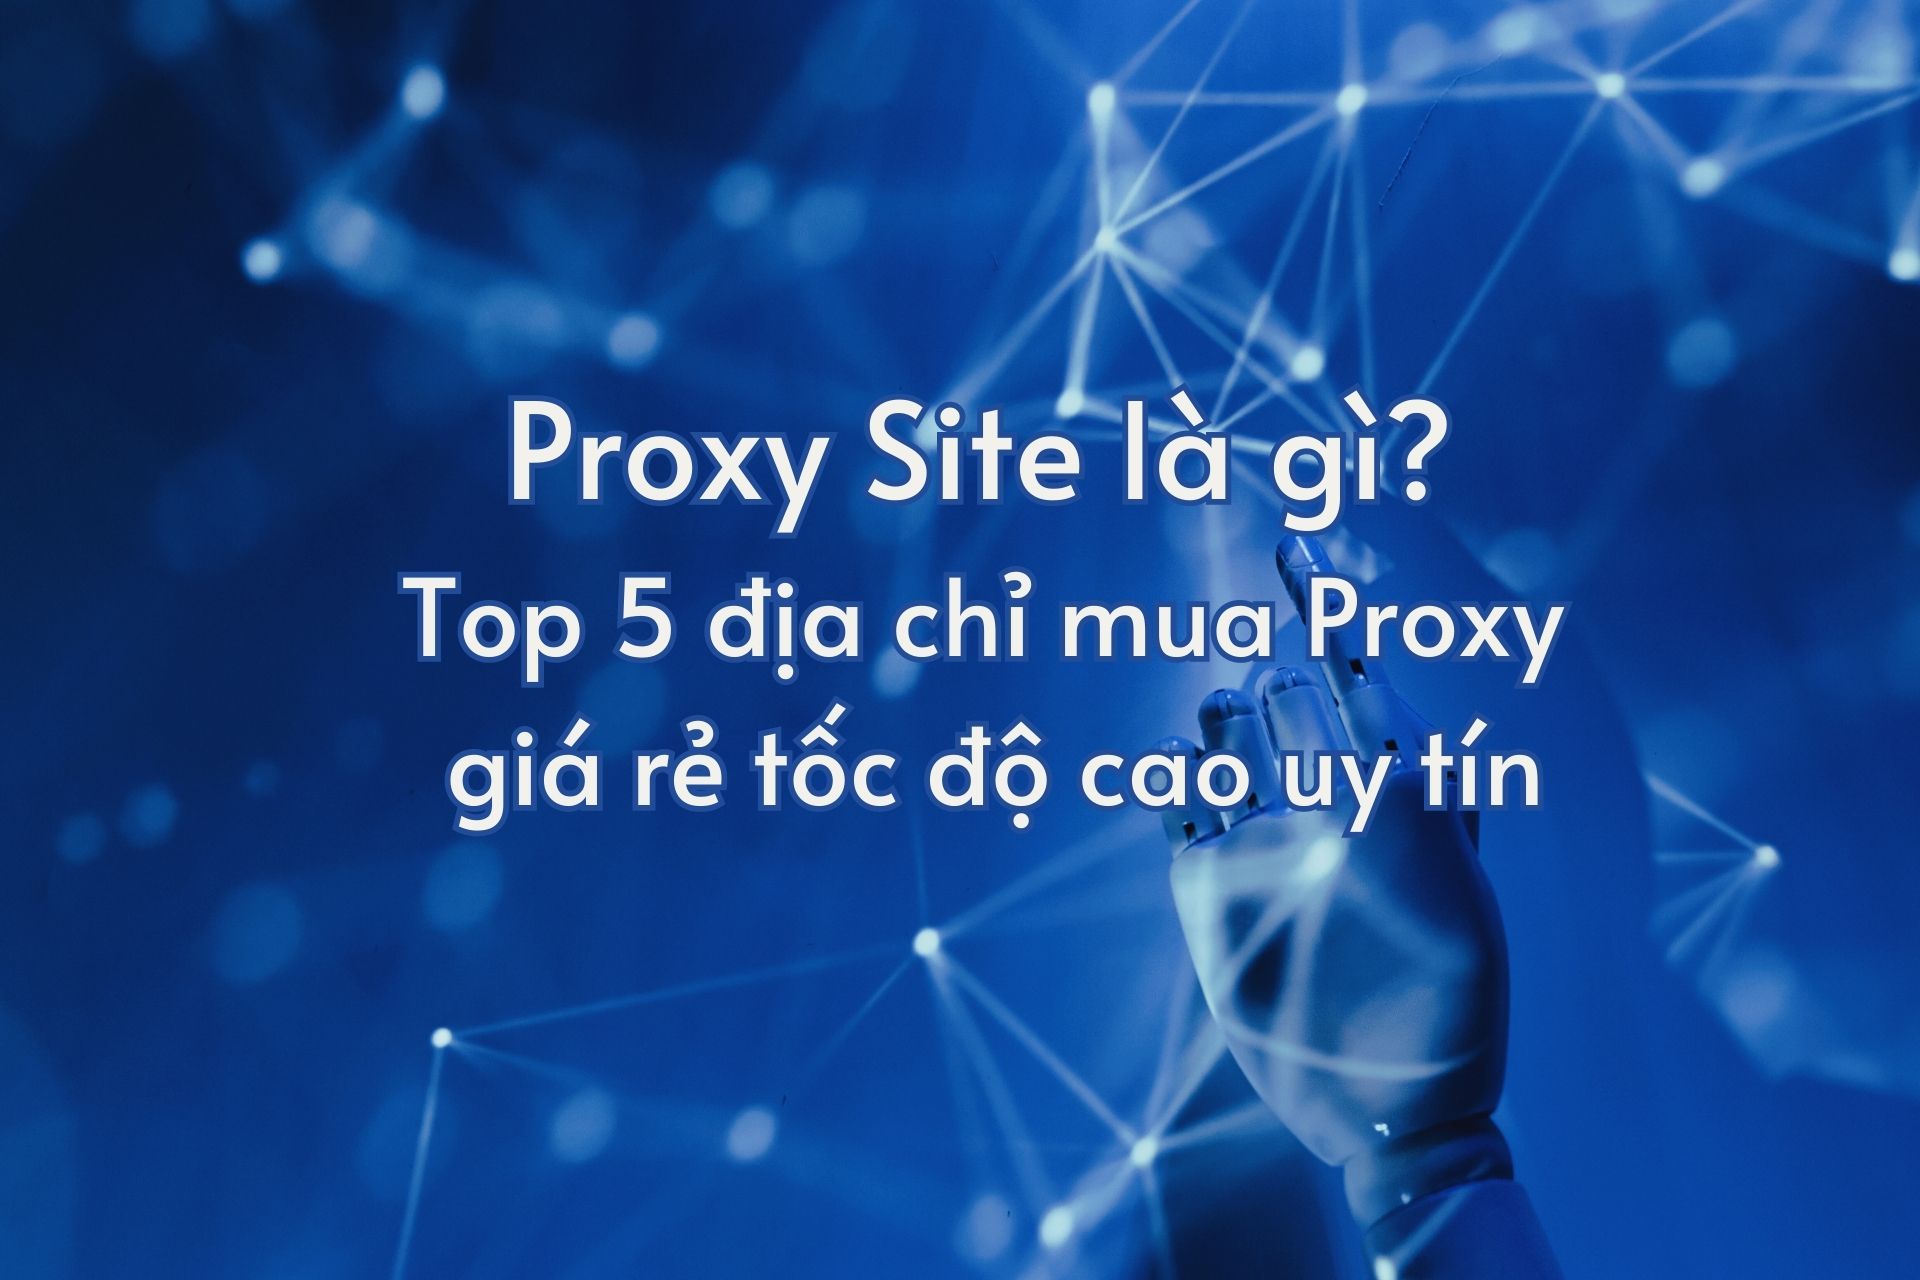 Proxy Site là gì? Top 5 địa chỉ mua Proxy giá rẻ tốc độ cao uy tín